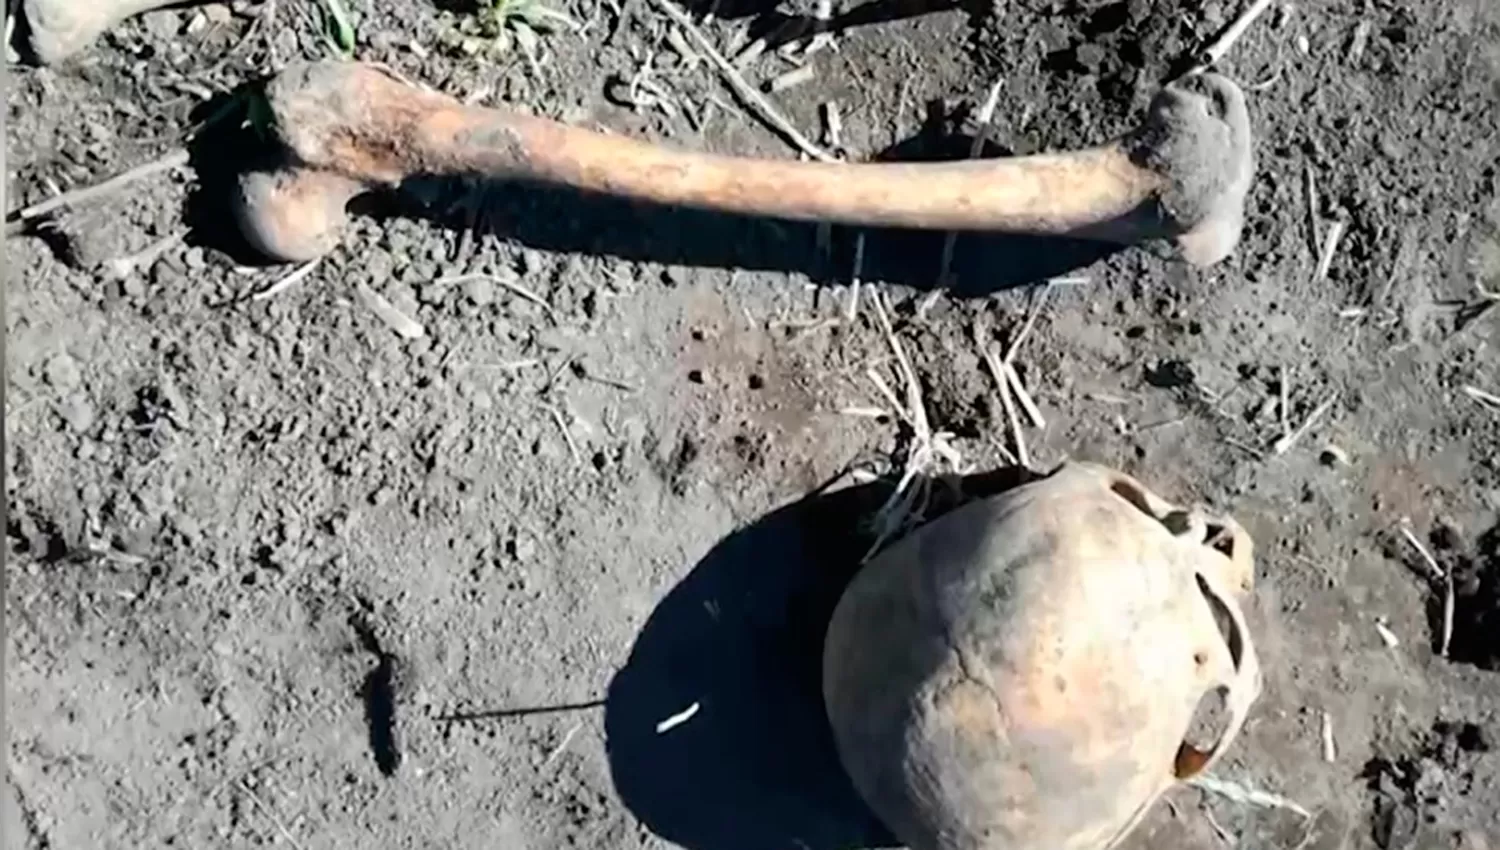 LOS RESTOS. Huesos y un cráneo, eso fue lo que encontró un hombre enterrados en el jardín de su casa. (FOTO DE www.omsk.kp.ru)